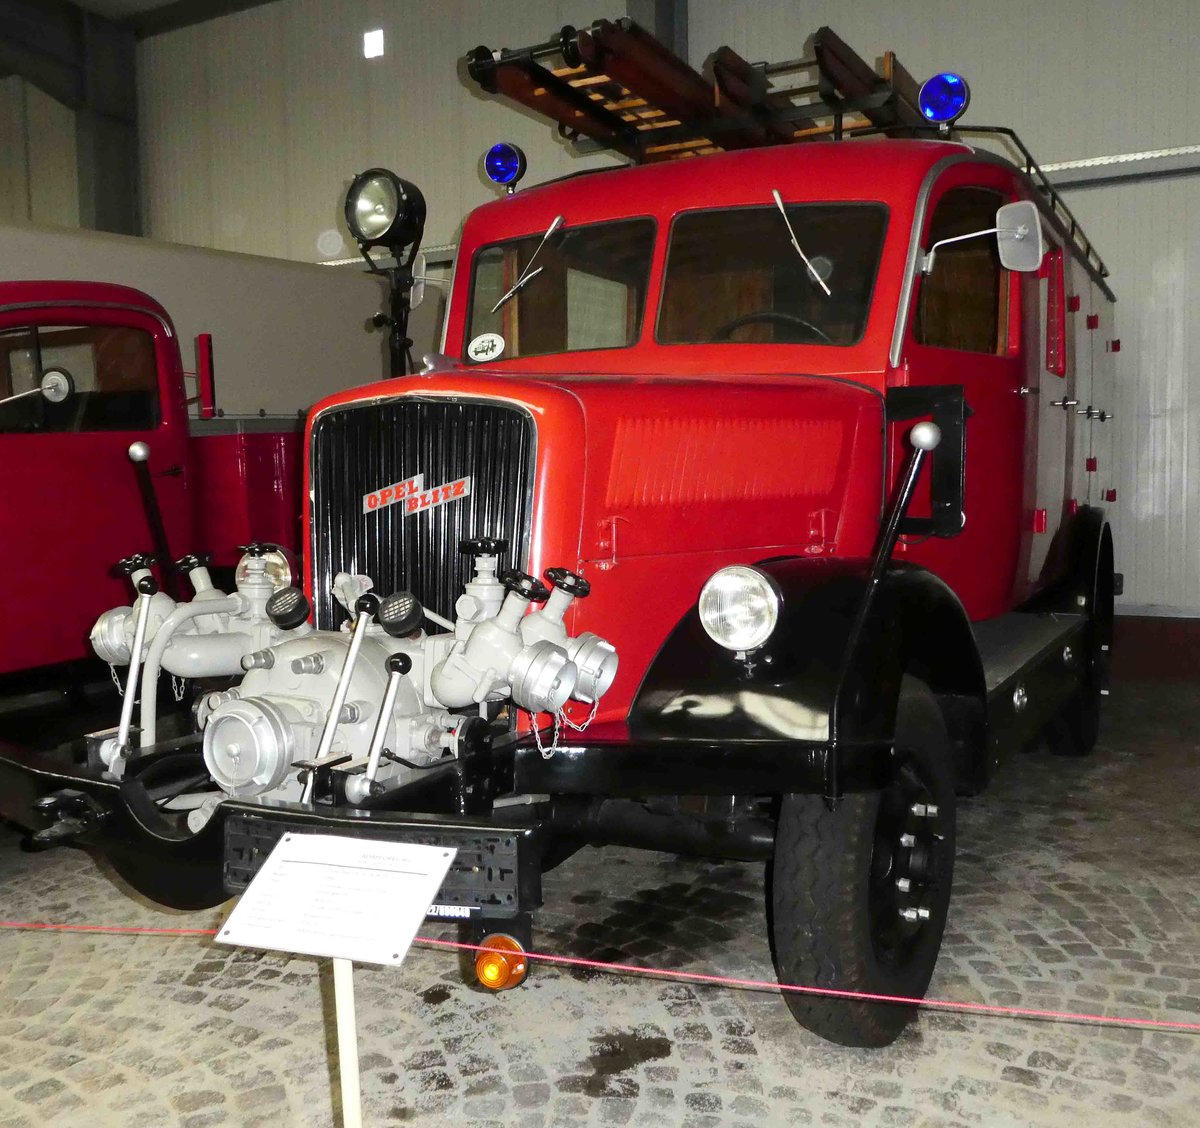 =Opel Blitz 3,6 - 6700 A LF15, Bj. 1943, gesehen im sächsischen Nutzfahrzeugmuseum in Hartmannsdorf im Juli 2016